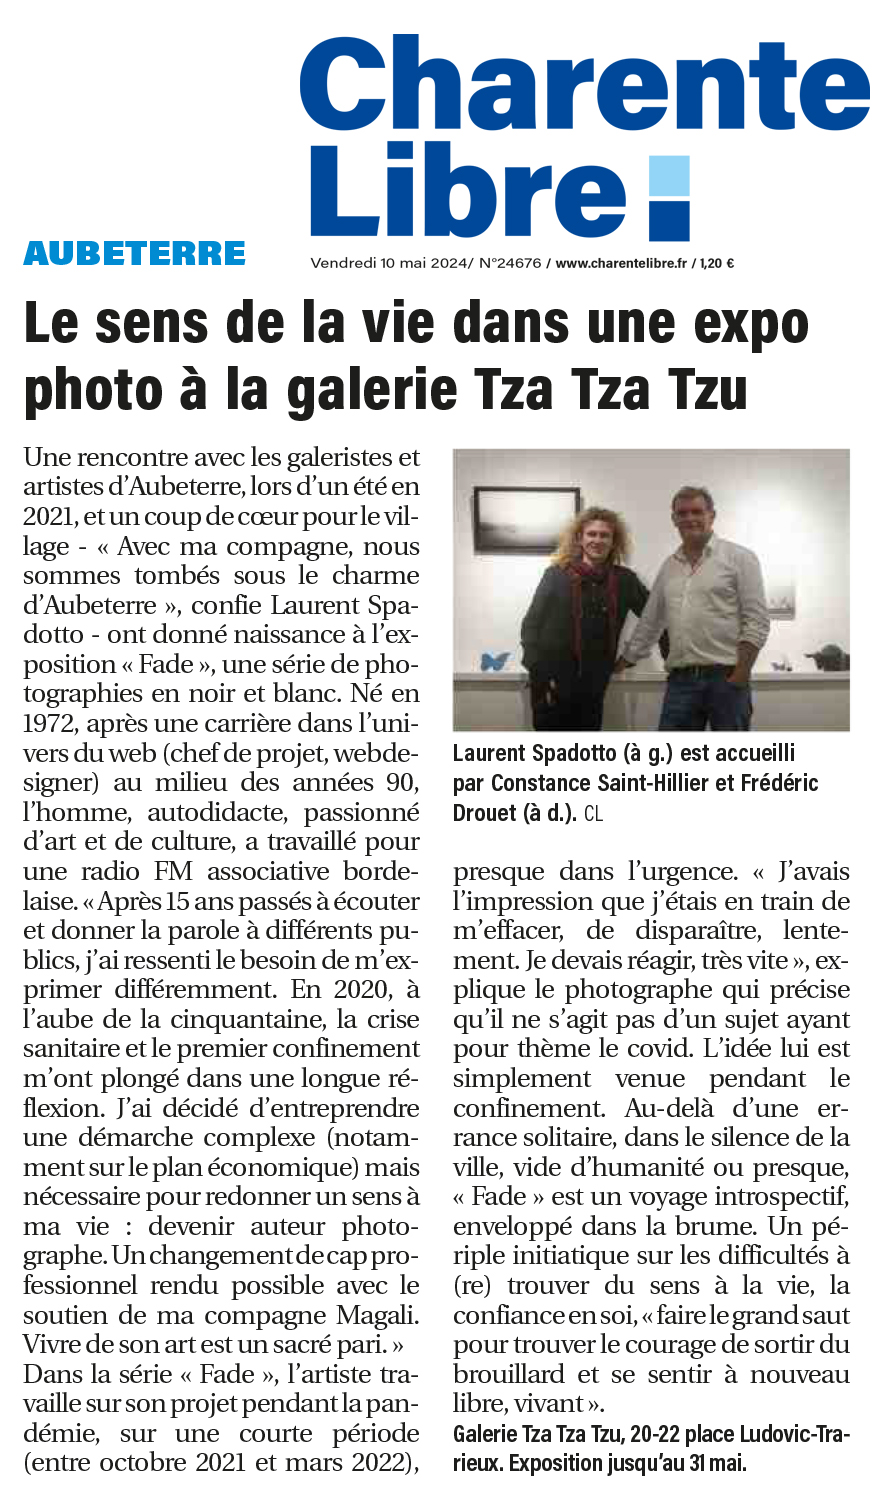 Exposition photos Laurent Spadotto - Galerie d'art Tza Tza Tzu, Aubeterre sur Dronne, Charente.